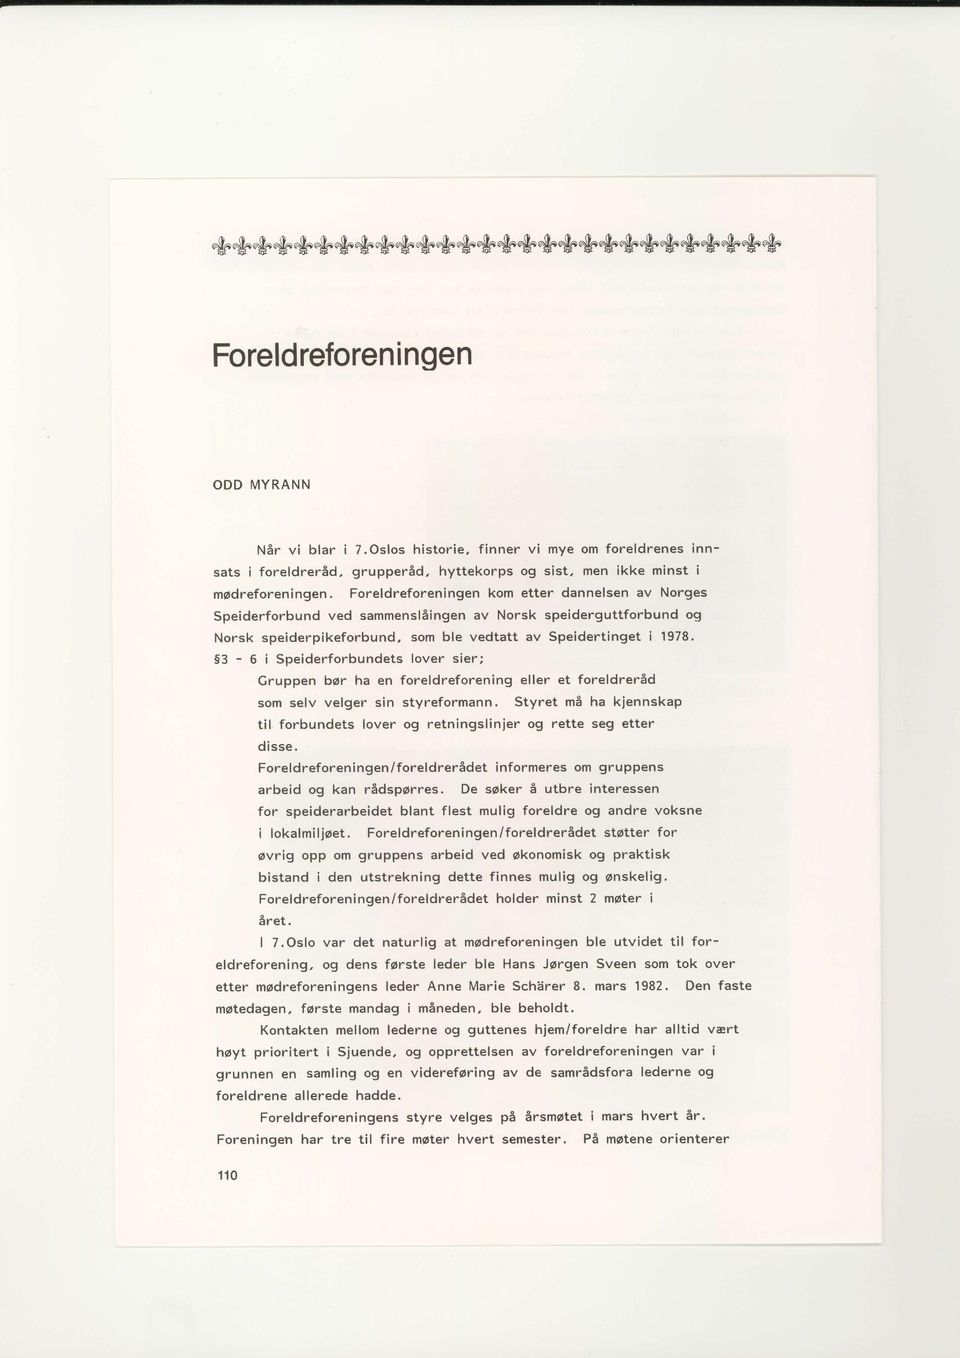 Foreldreforeningen kom etter dannelsen av Norges Speiderforbund ved sammenslsingen av Norsk speiderguttforbund og Norsk speiderpikeforbund, som ble vedtatt av Speidertinget i 1978.